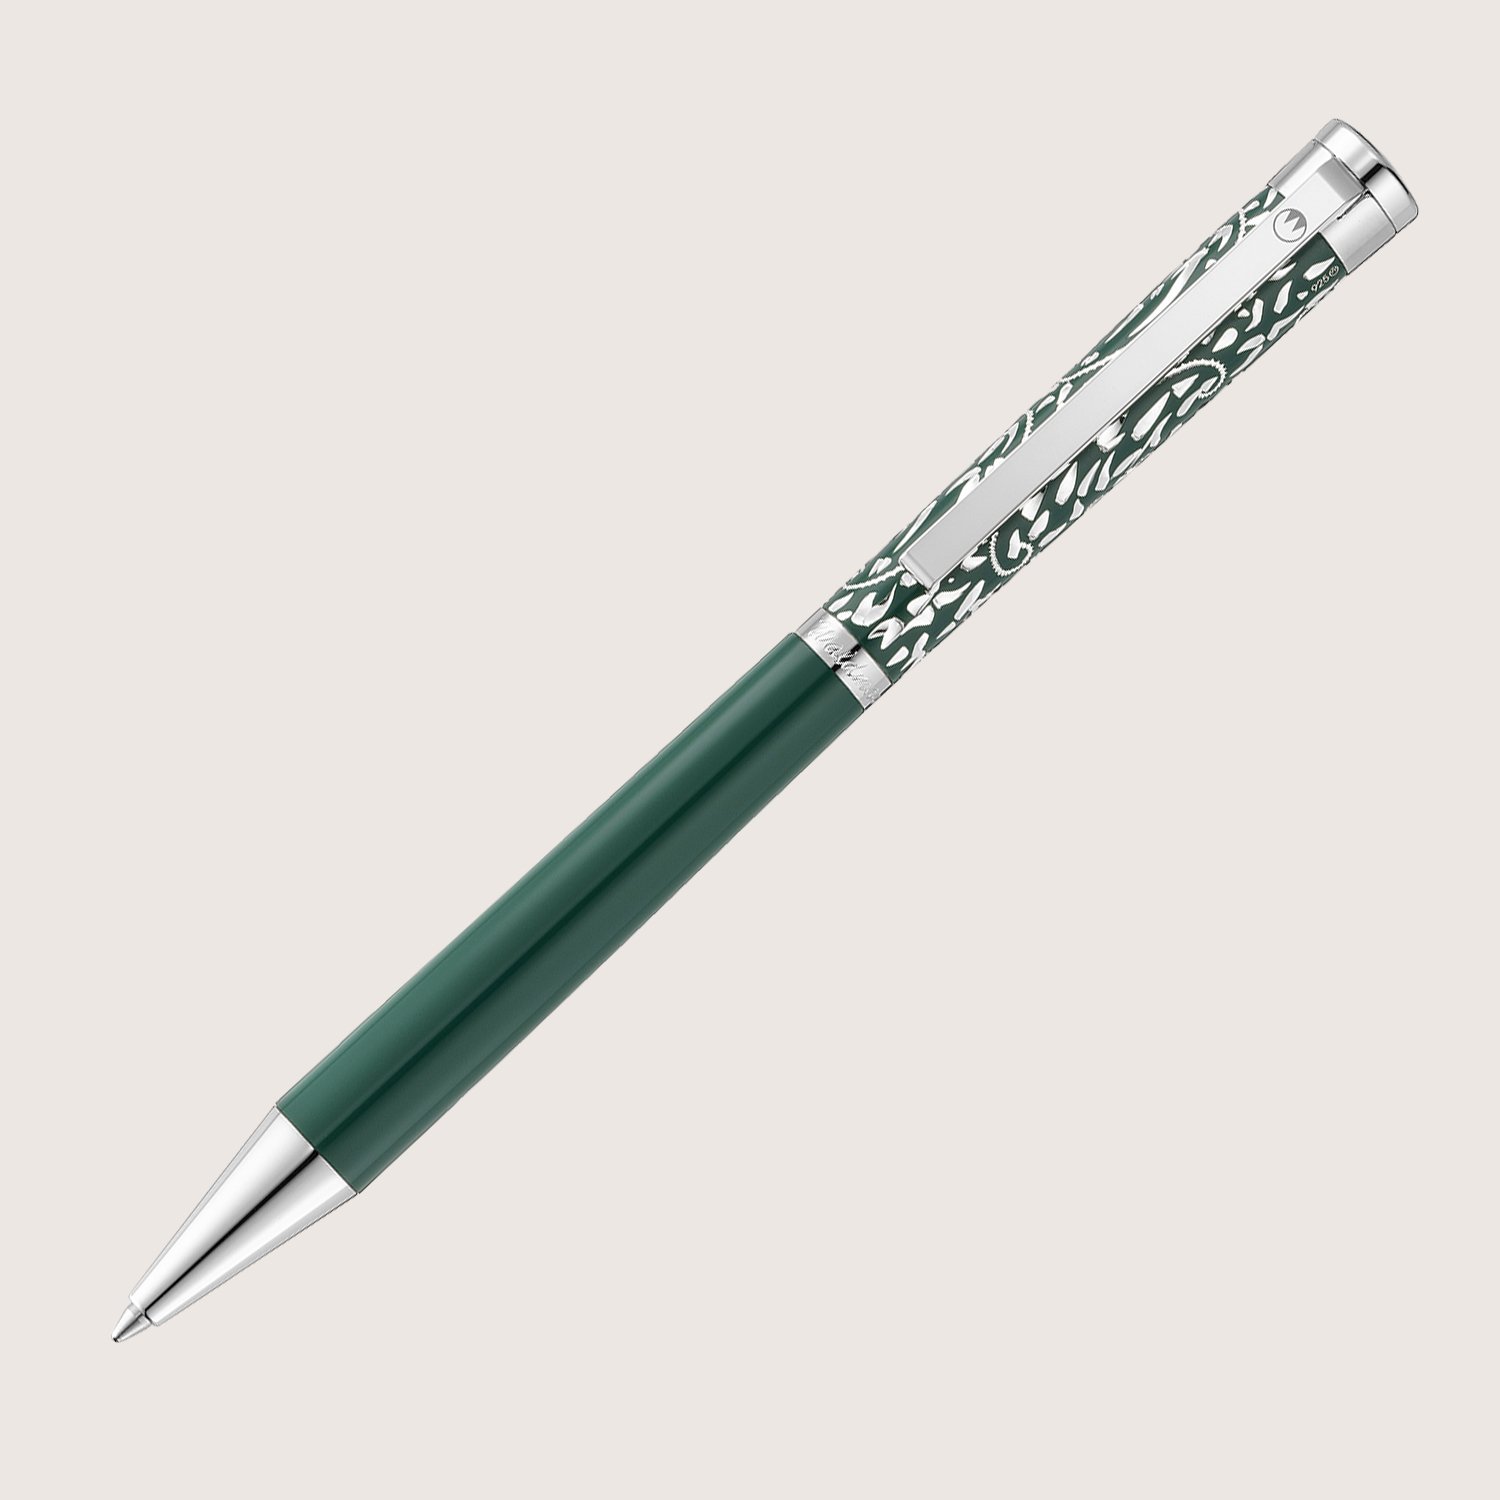 XETRA VIENNA Drehkugelschreiber Lack grün mit Handgravur - Special Edition